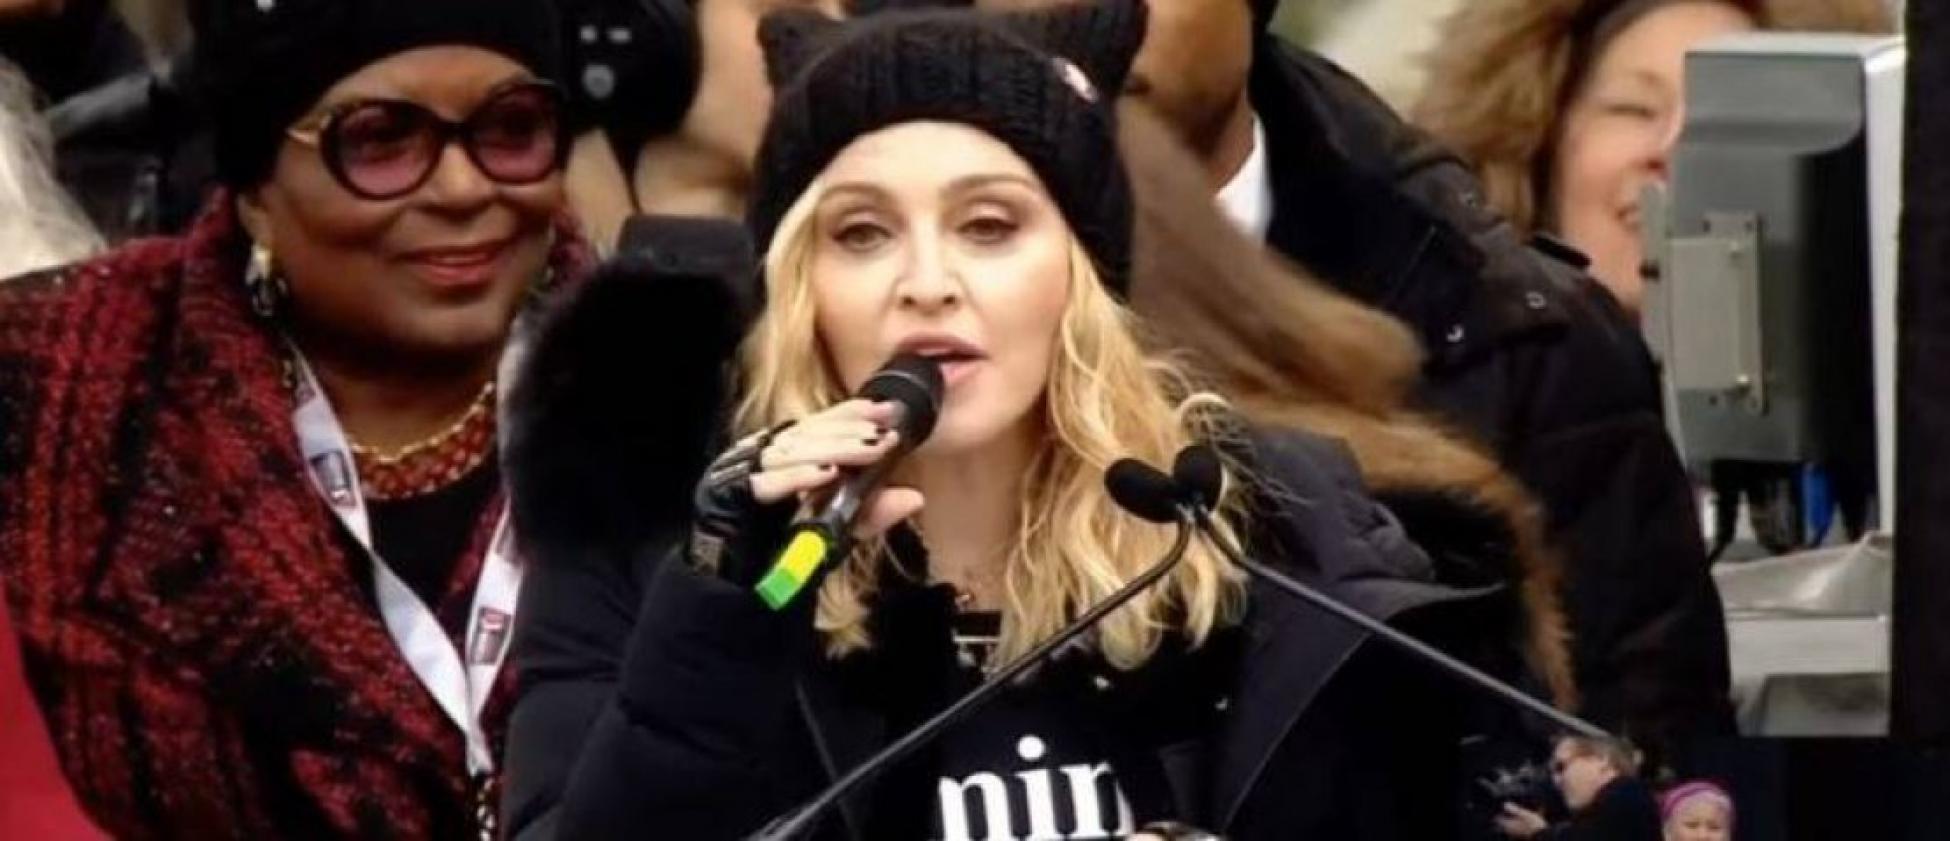 Madonna Se D Voile Nue Sur Instagram Et Enflamme Internet Photos